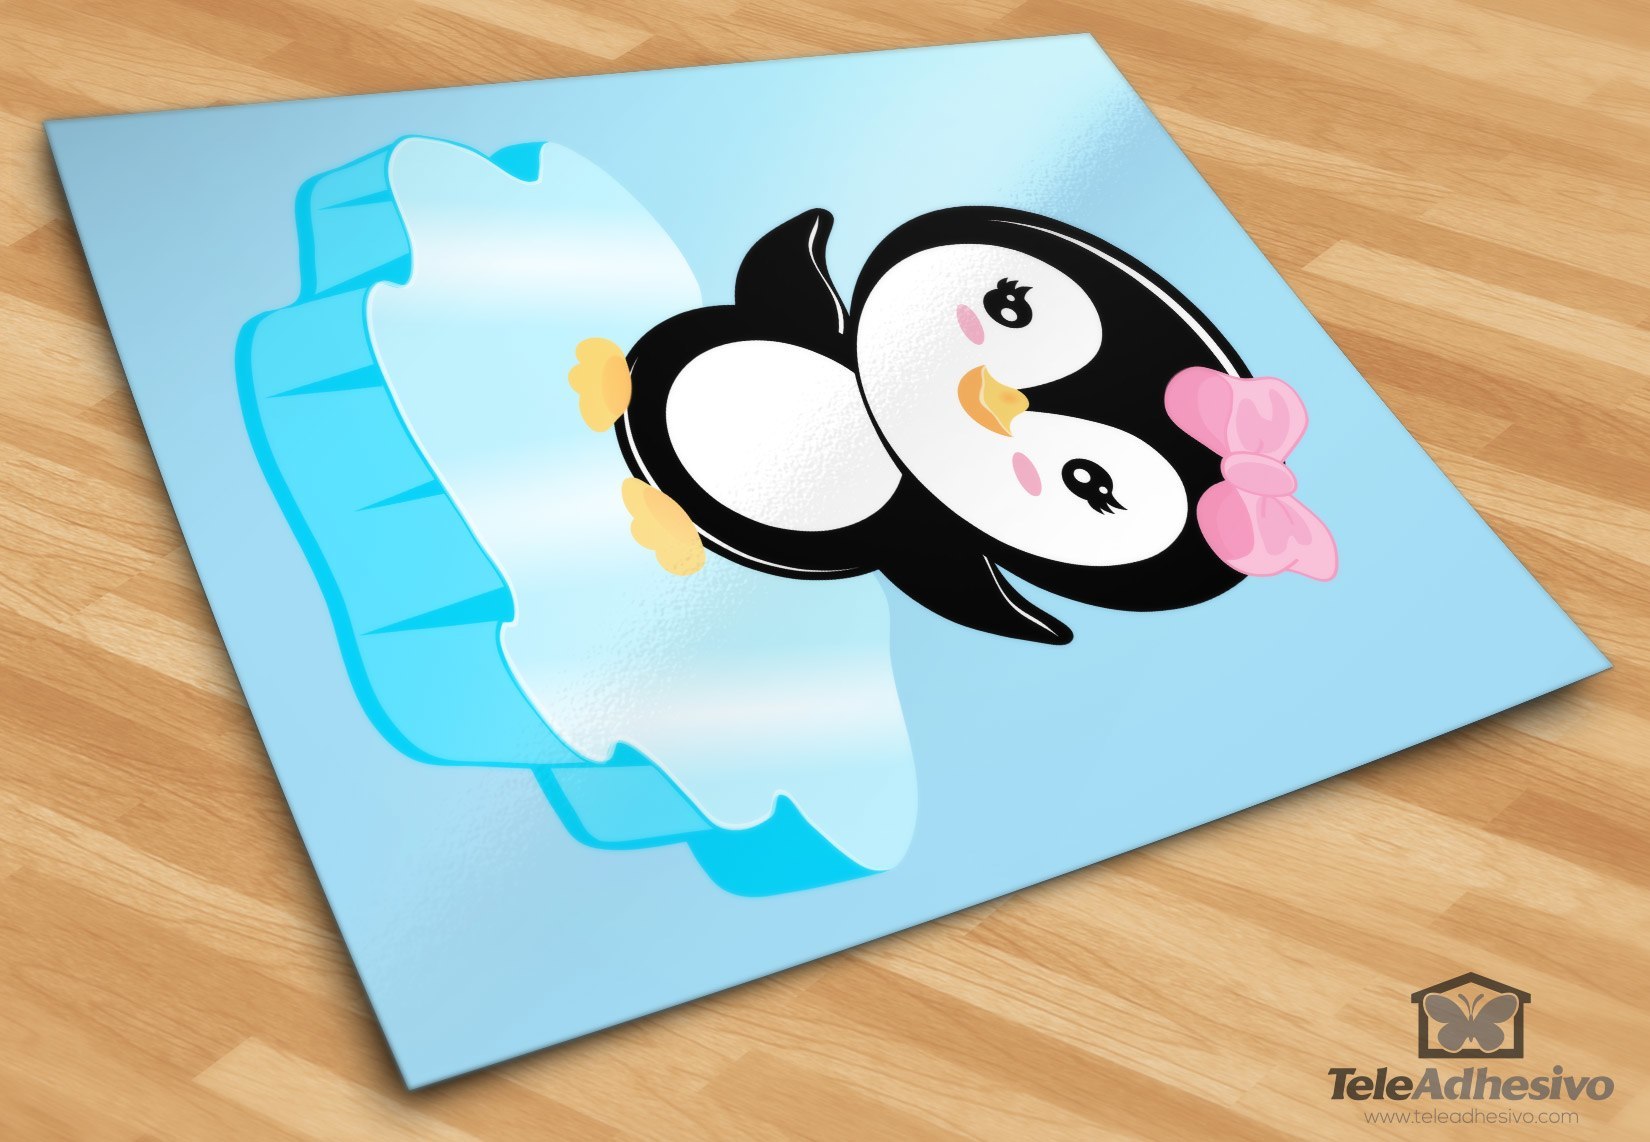 Kinderzimmer Wandtattoo: Pinguin auf Eis